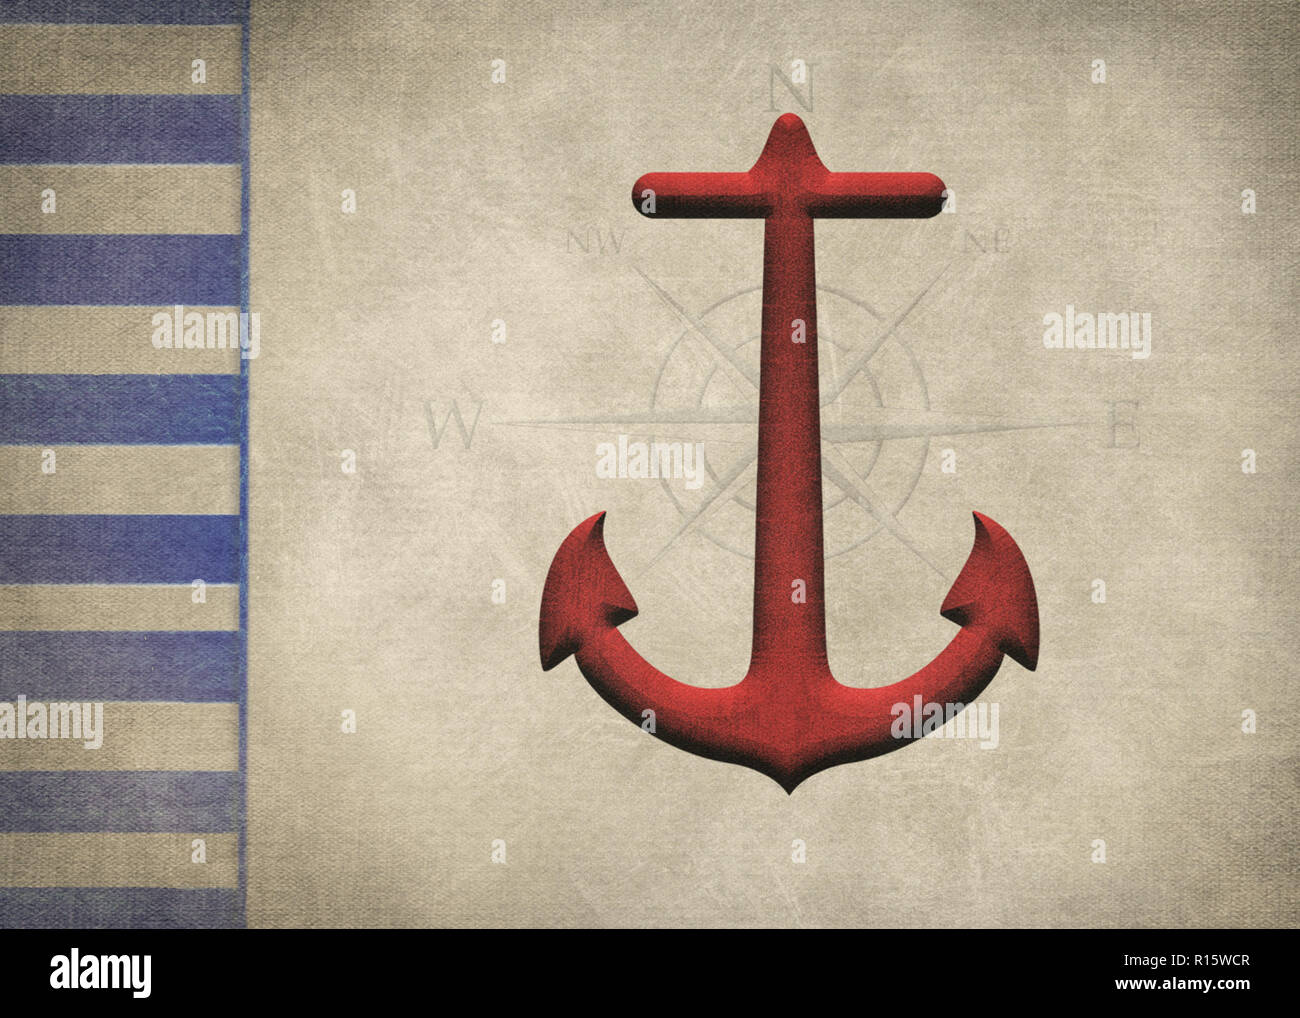 Rot Anker und Kompass mit Nautical Blue Stripe Grenze und Braun strukturierte Overlay Stockfoto